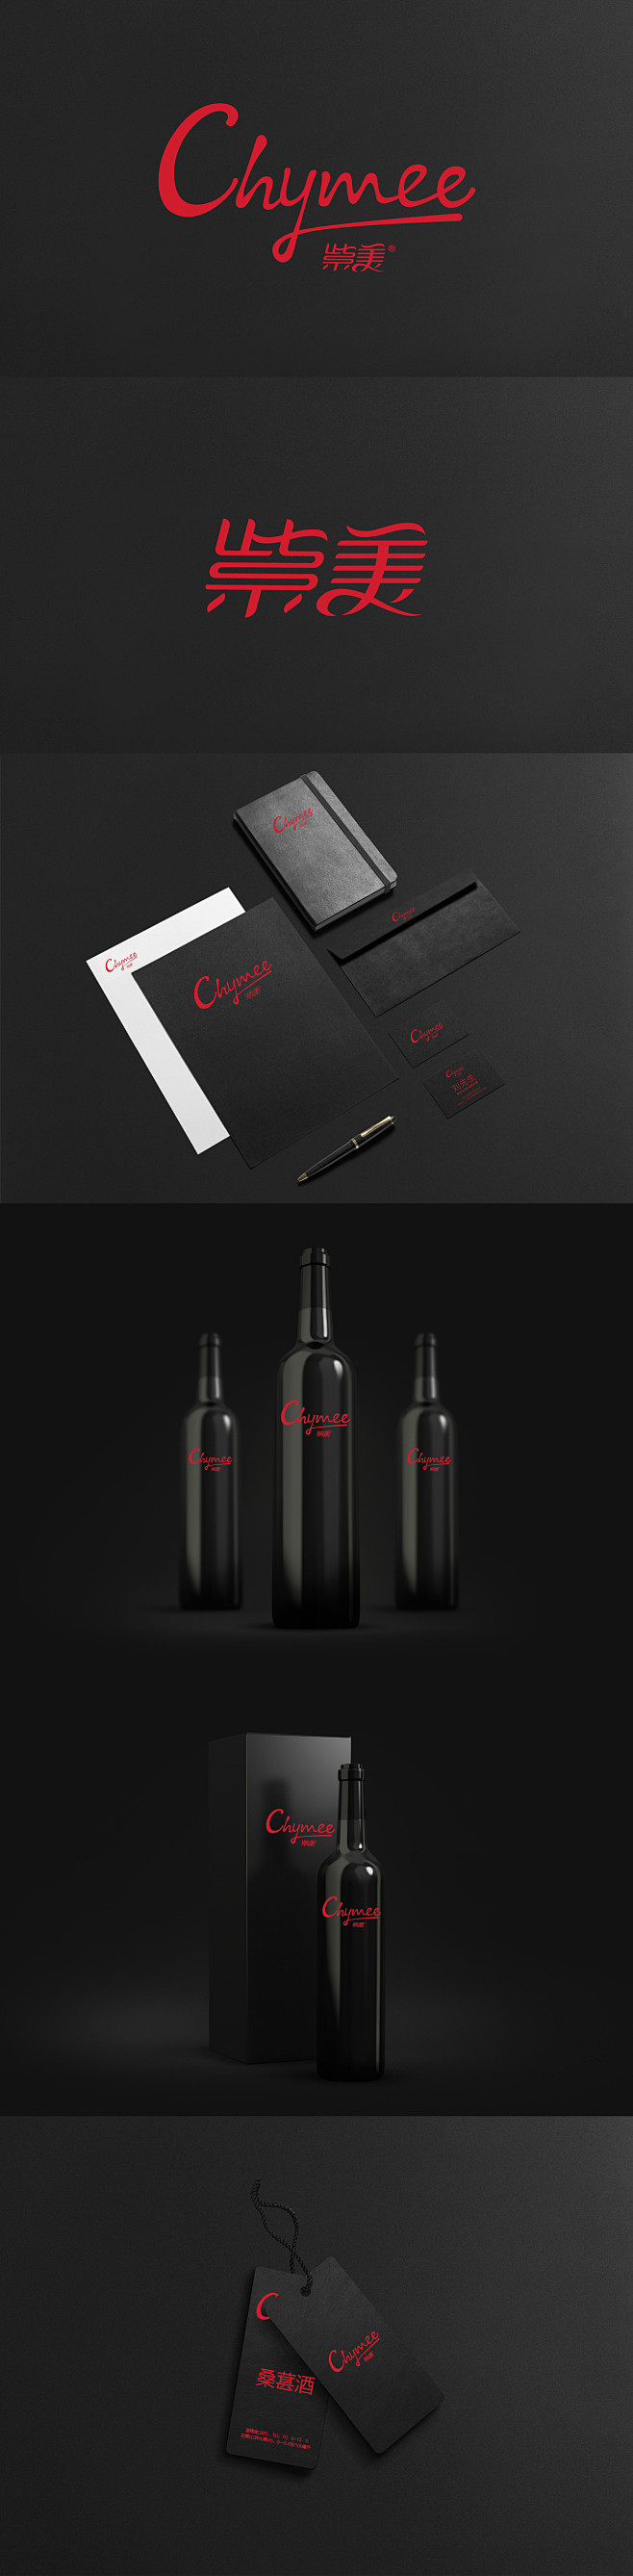 紫美 桑葚汁红酒  LOGO字体设计提案